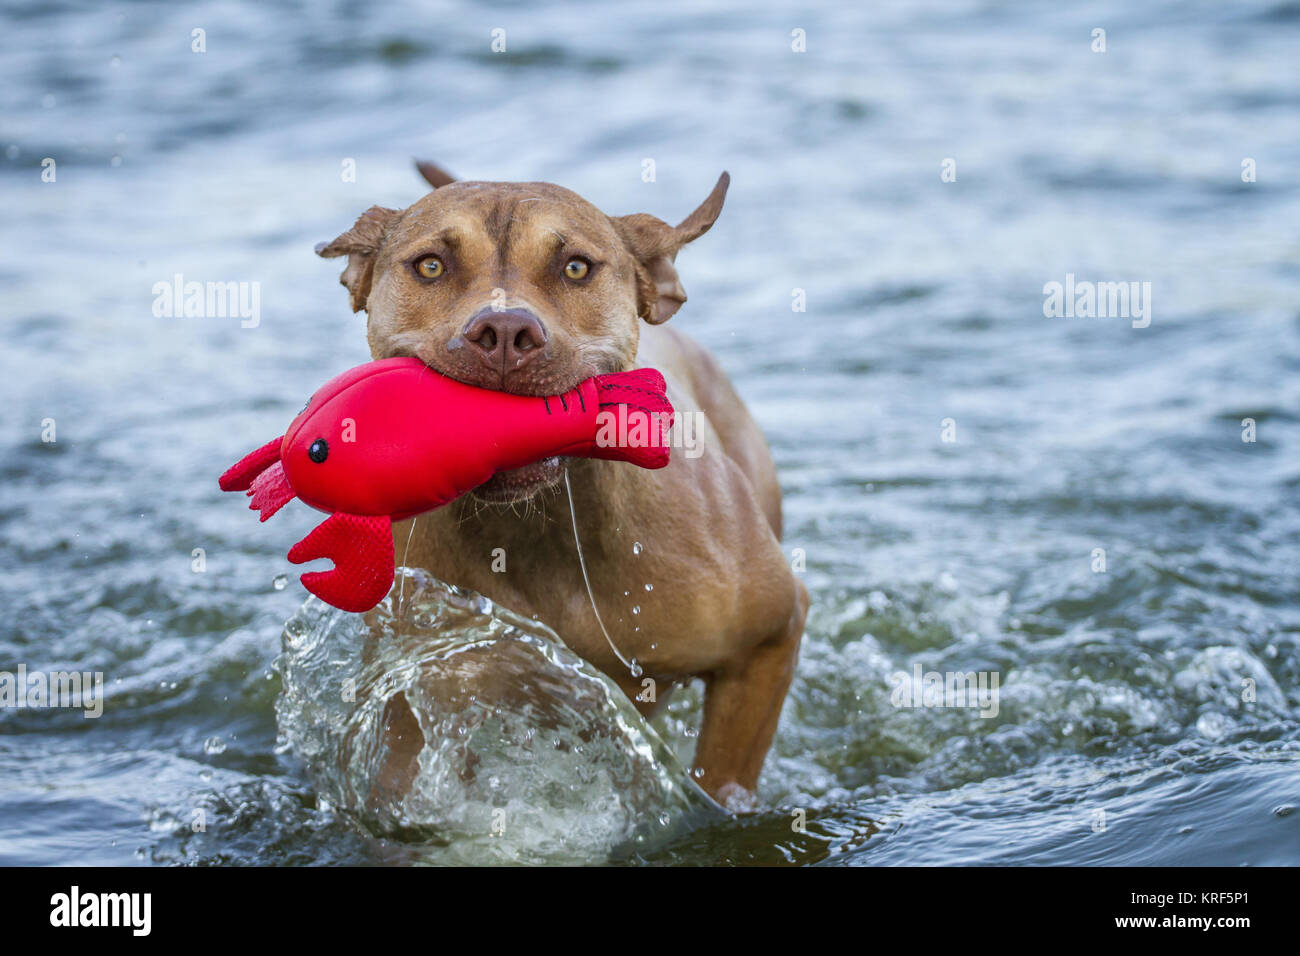 Die Pit Bulldog spielen mit einem roten Spielzeug in der Wasser Stockfoto